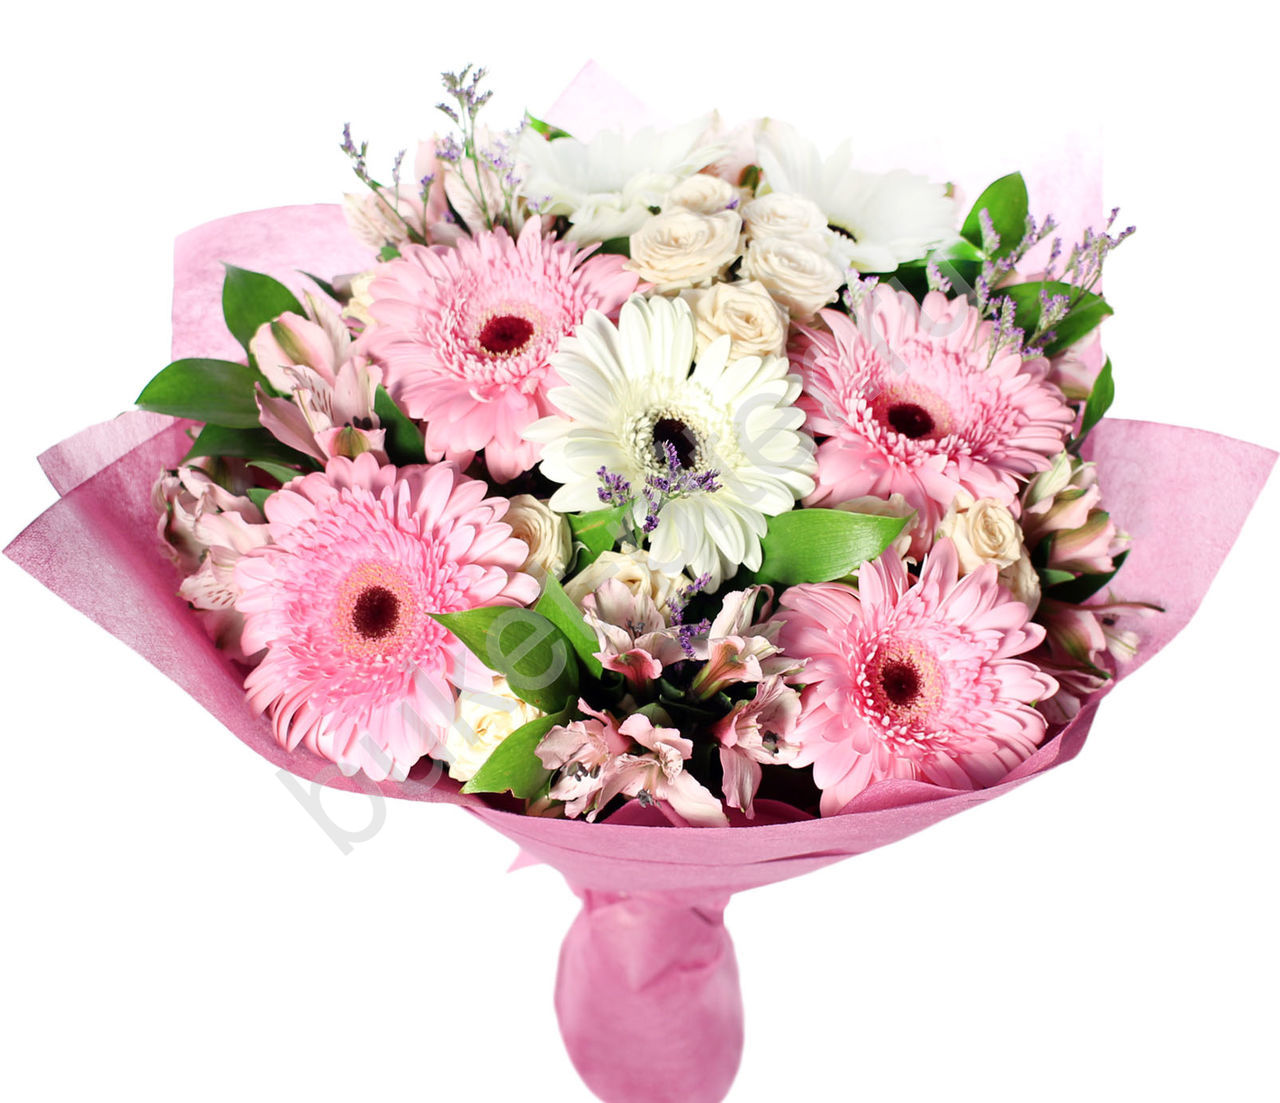  Antalya Blumenlieferung Bouquet Pink & White Celbera